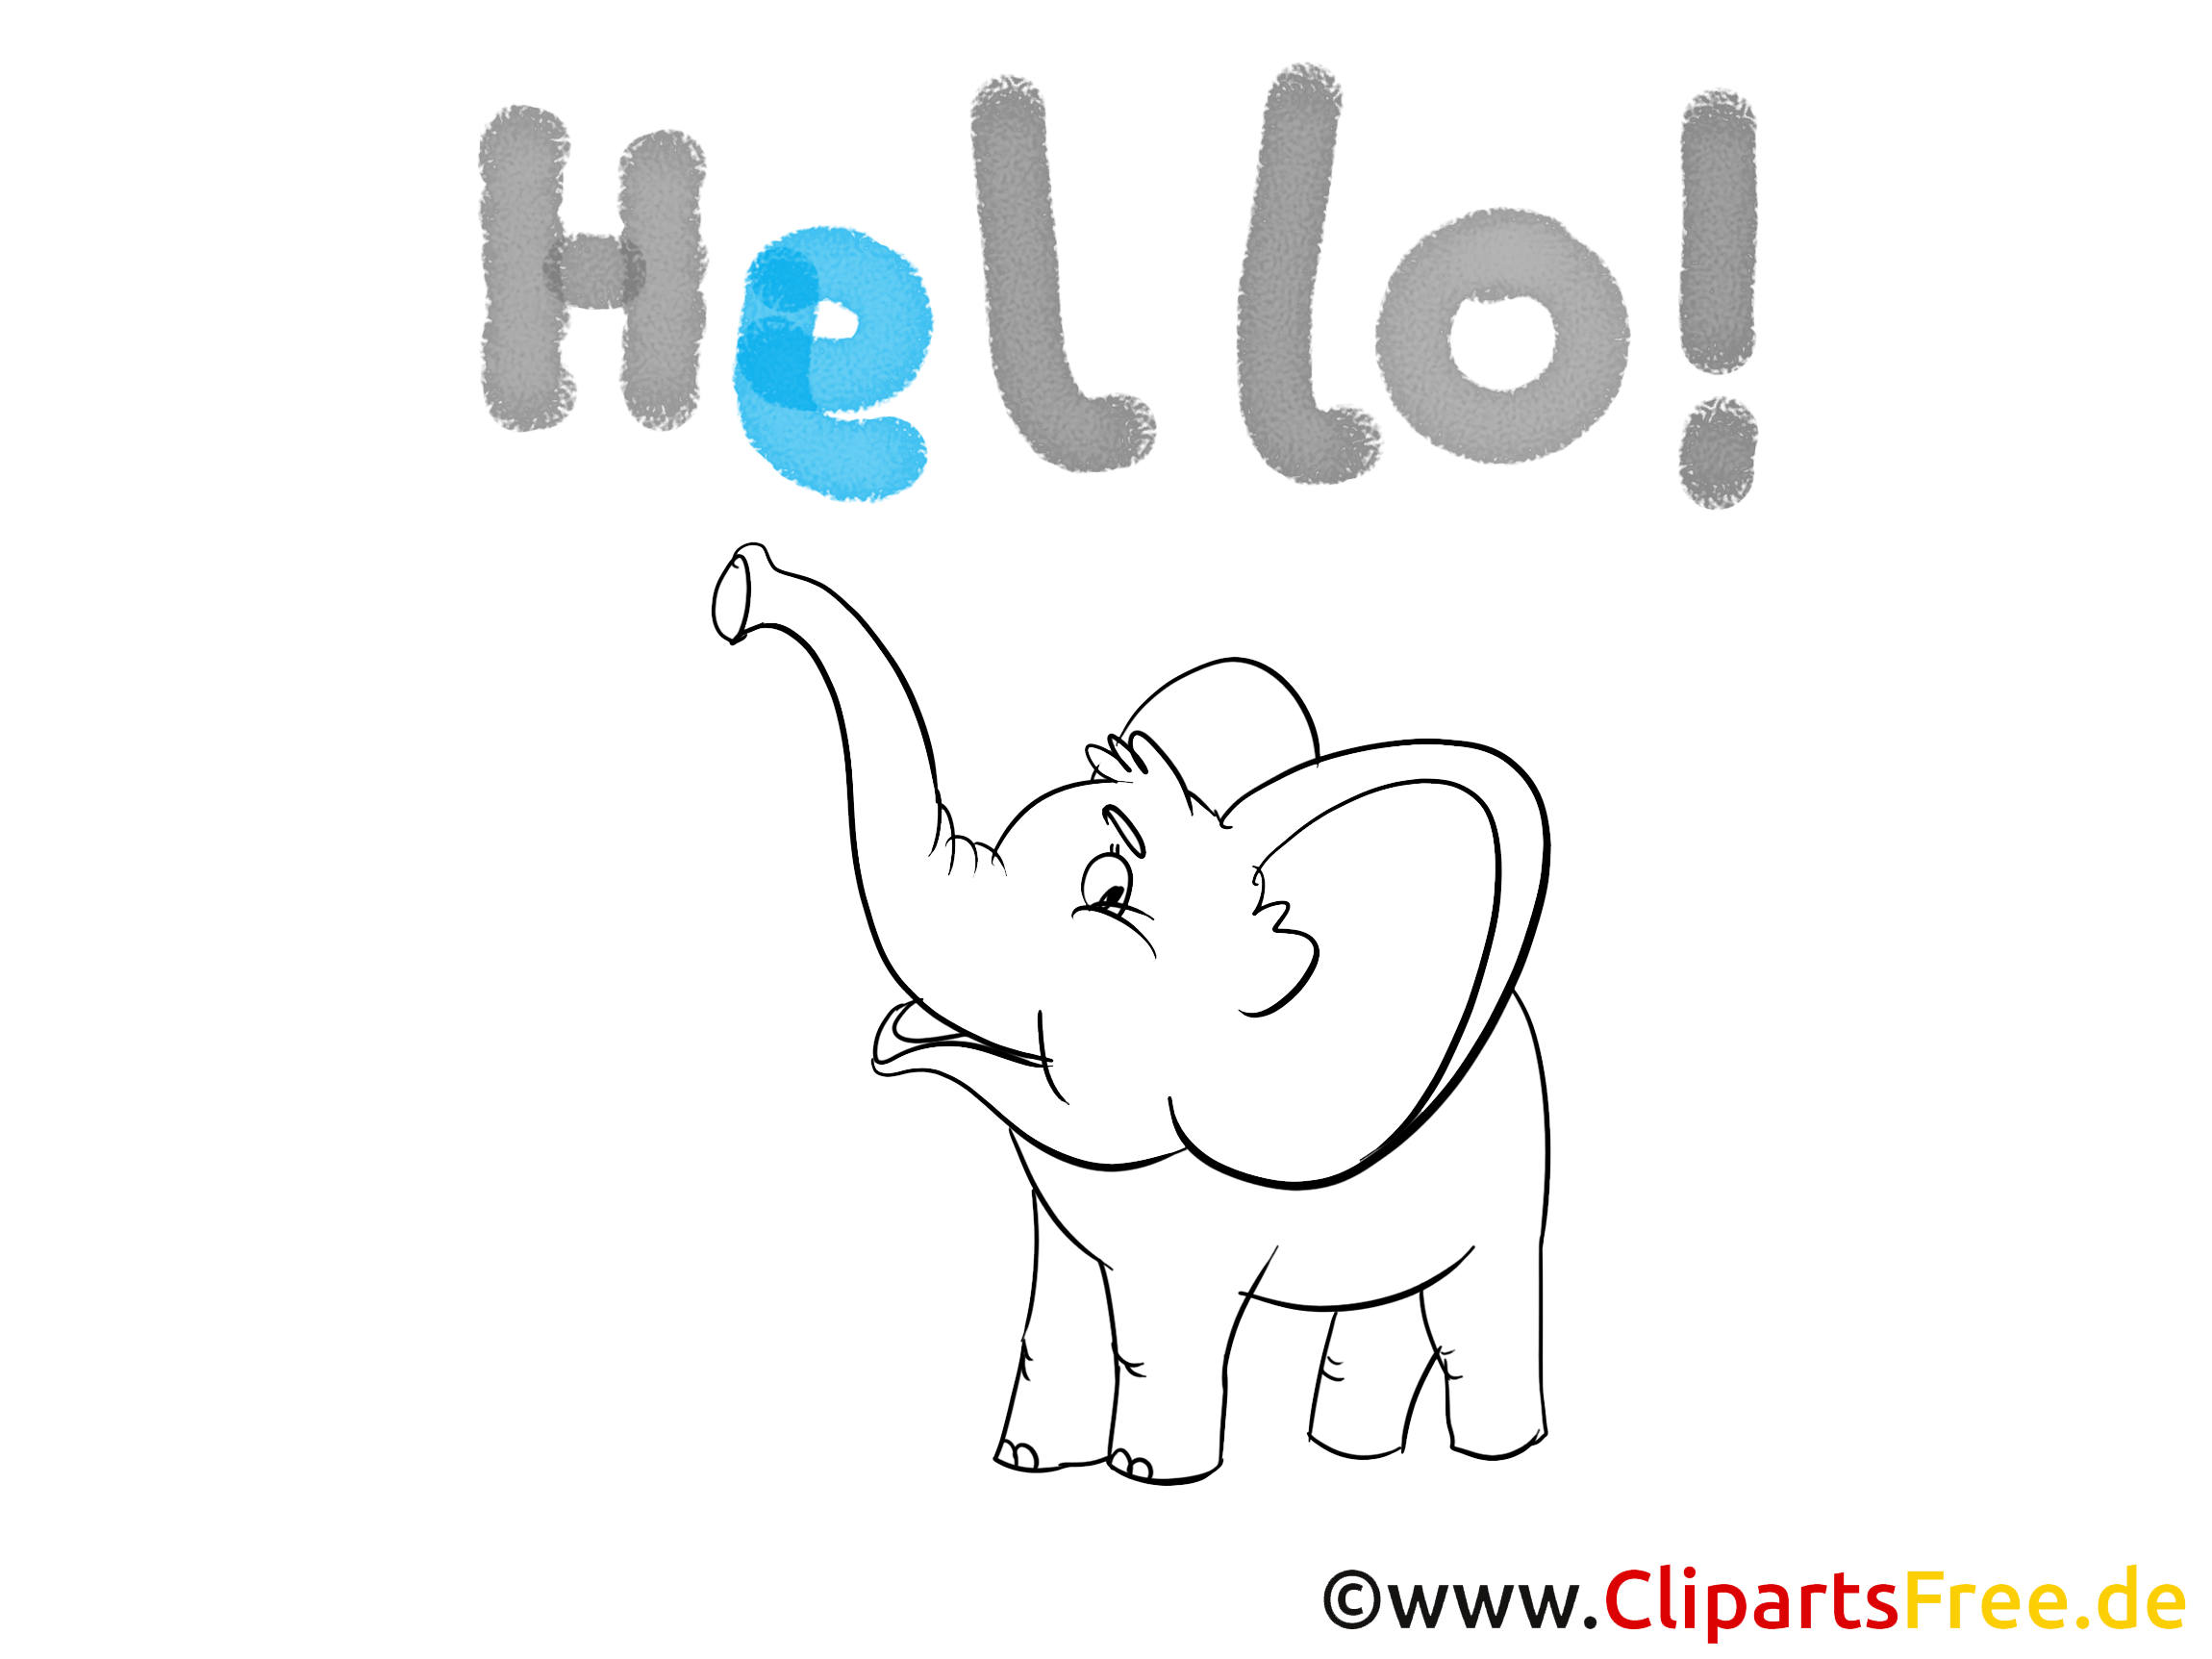 léphant cliparts à imprimer  - Salut images